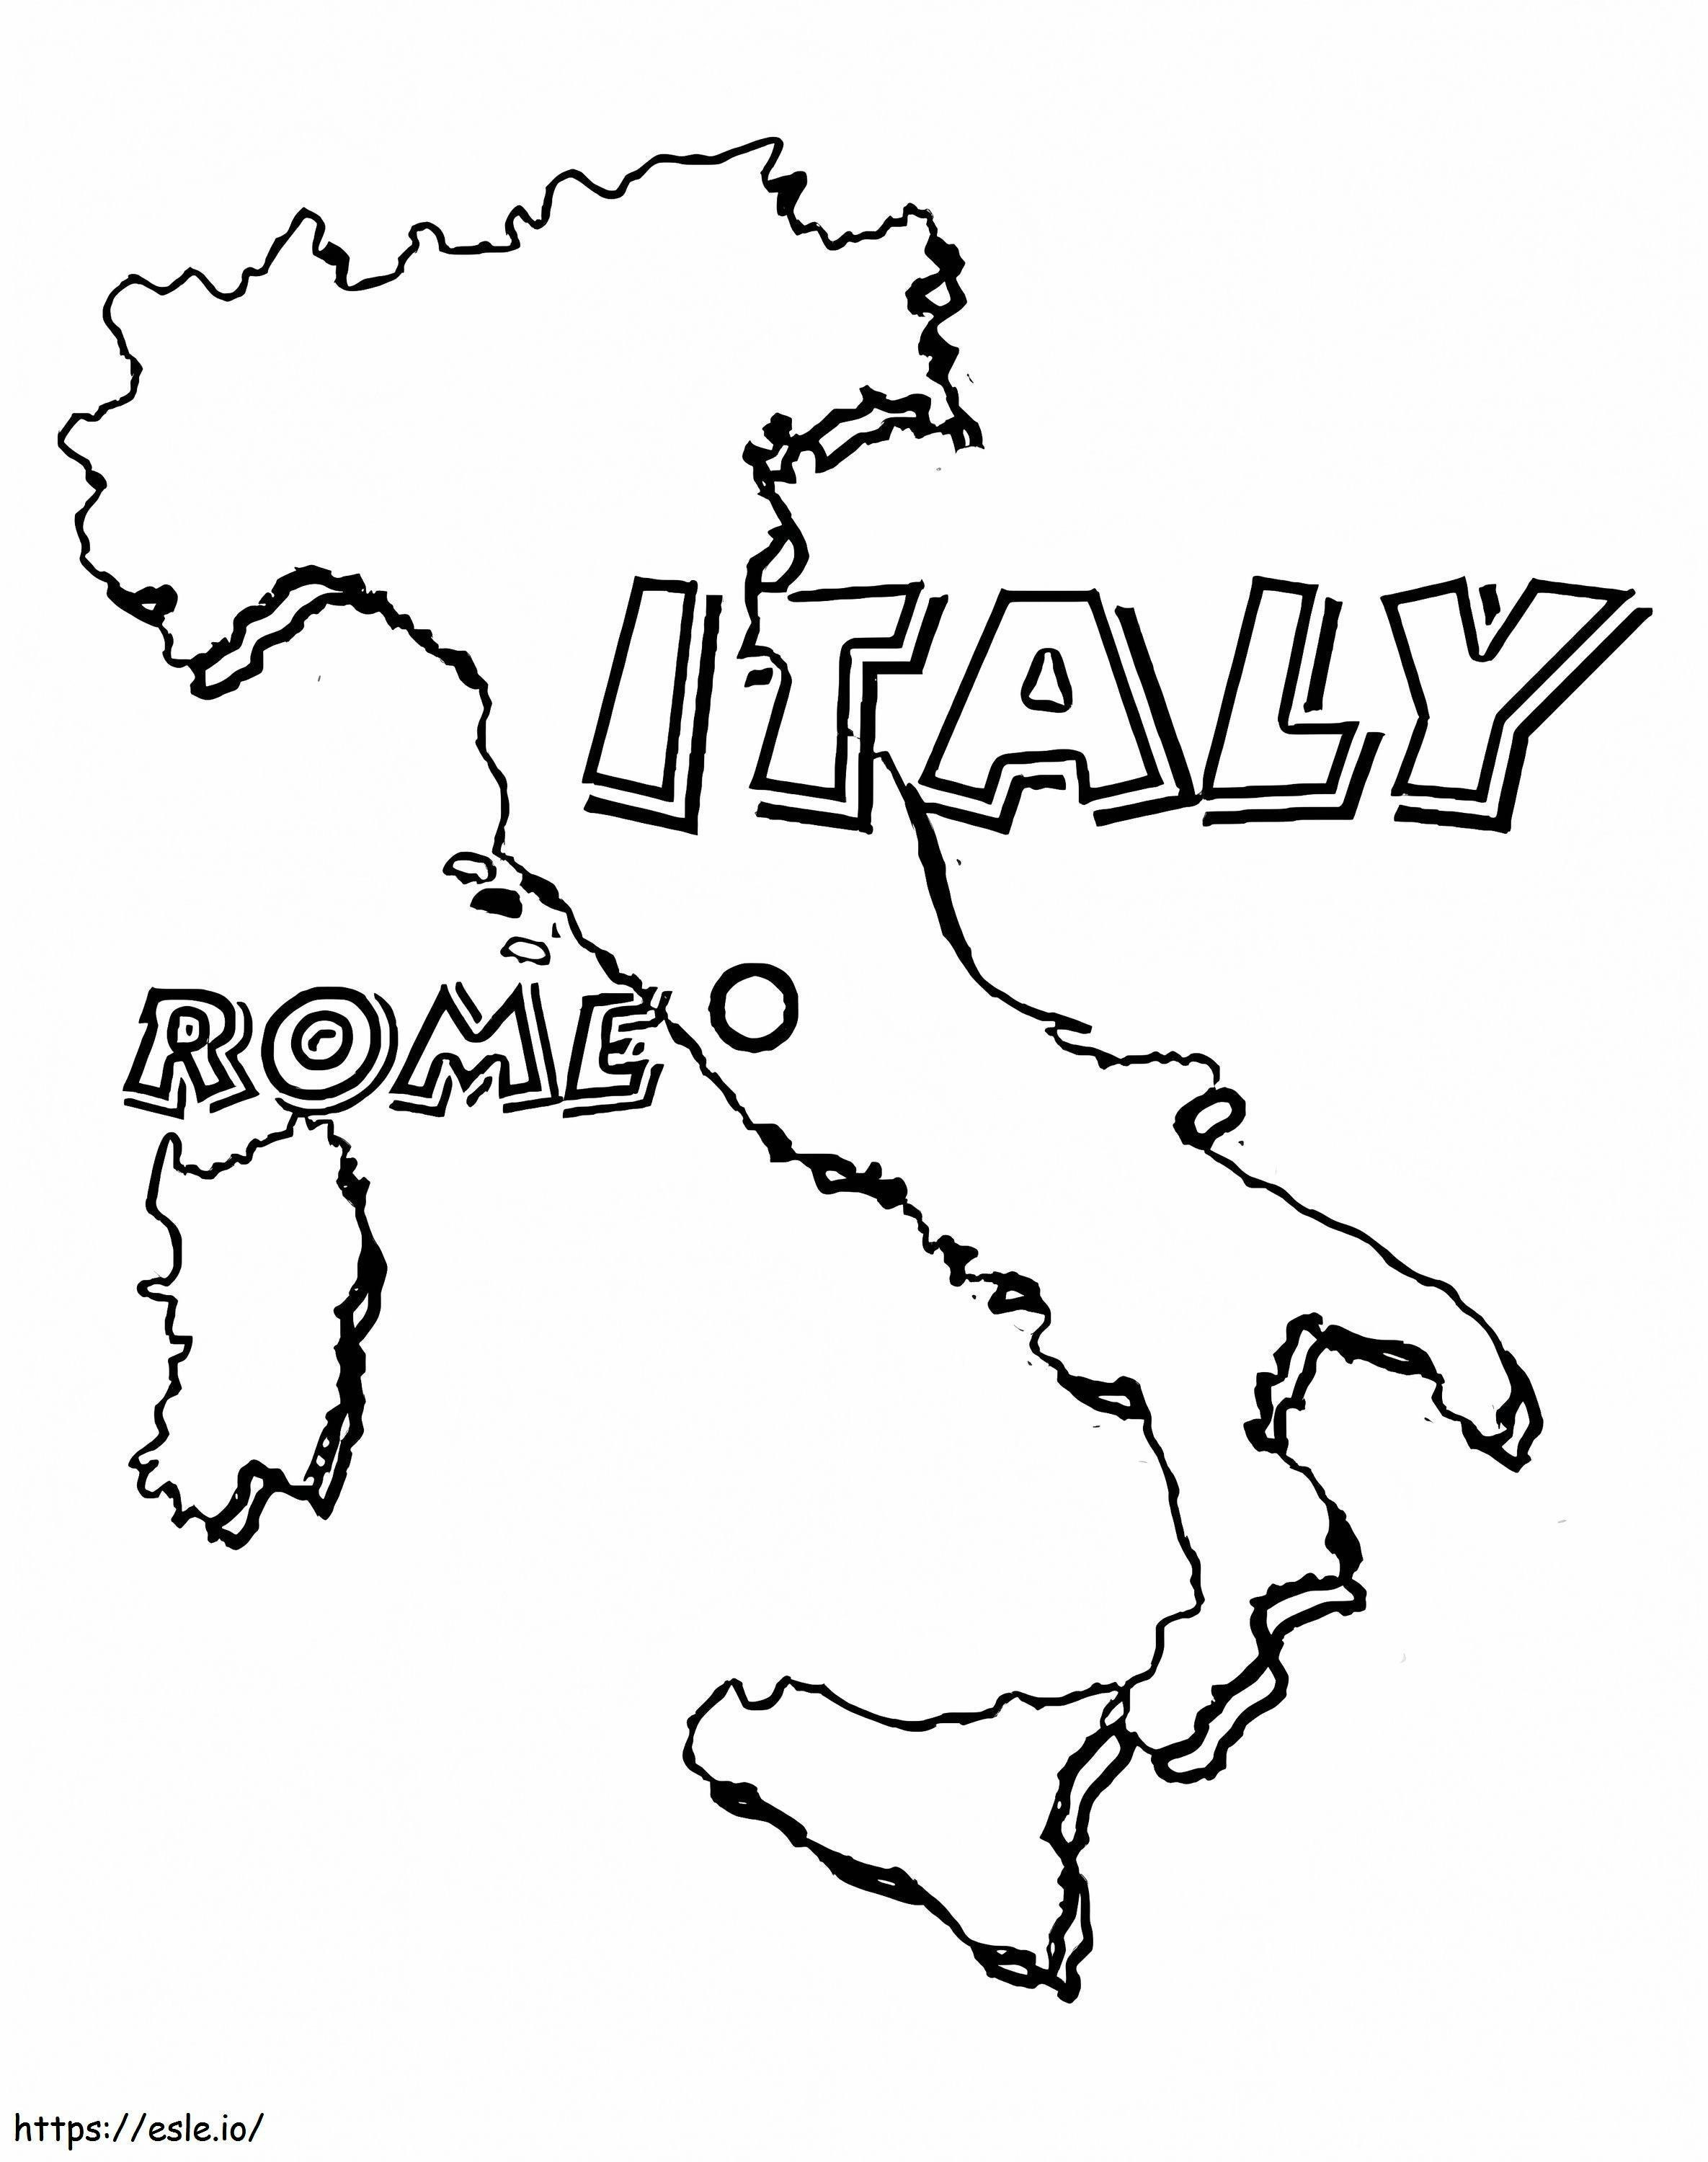 İtalya Haritası boyama